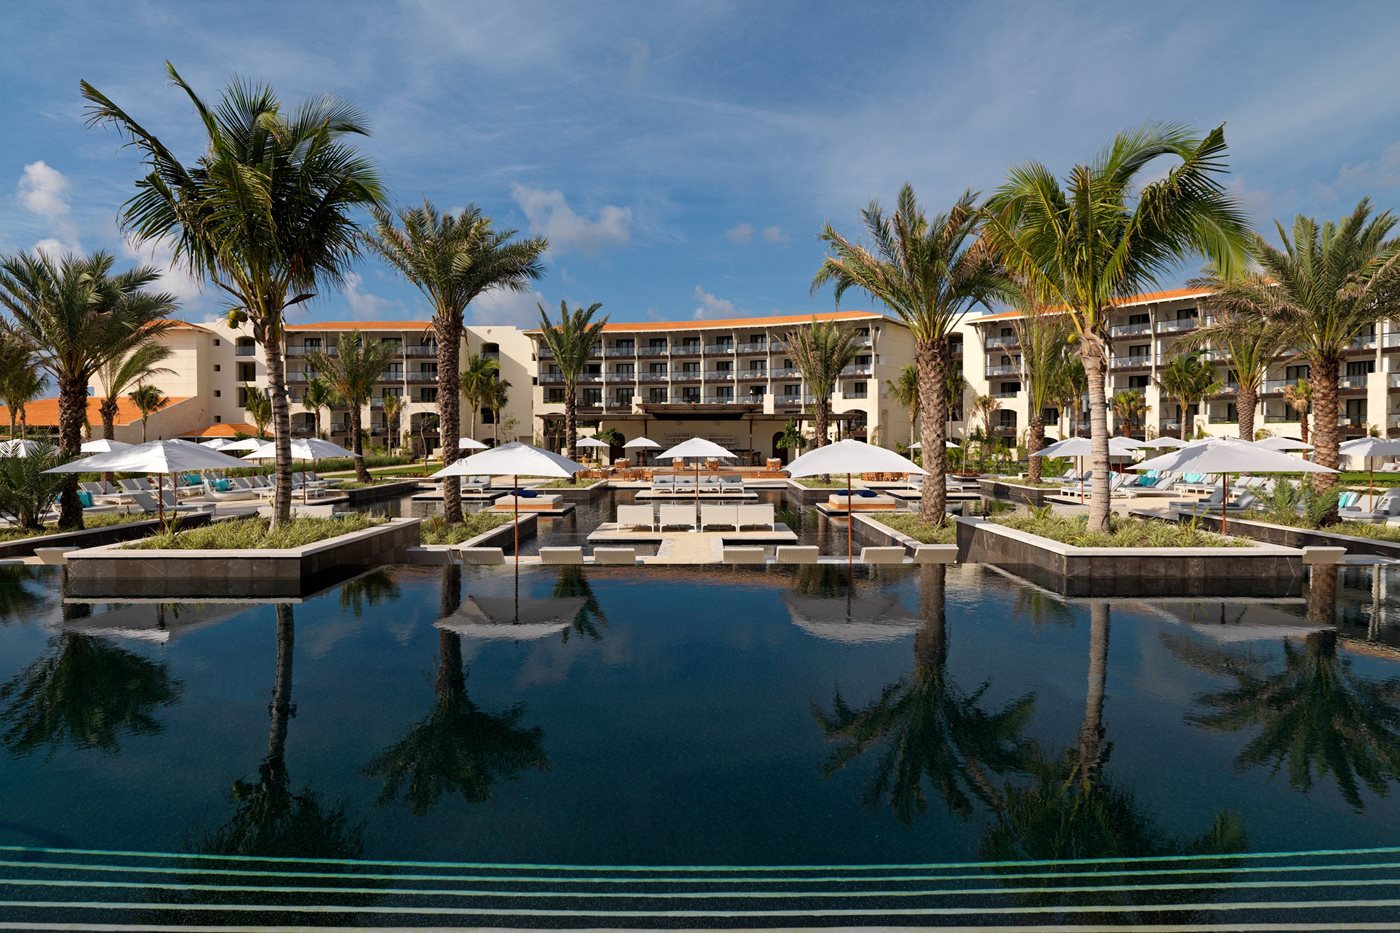 RIV-Unico-Hotel-Riviera-Maya-Pool-La-Unica-003